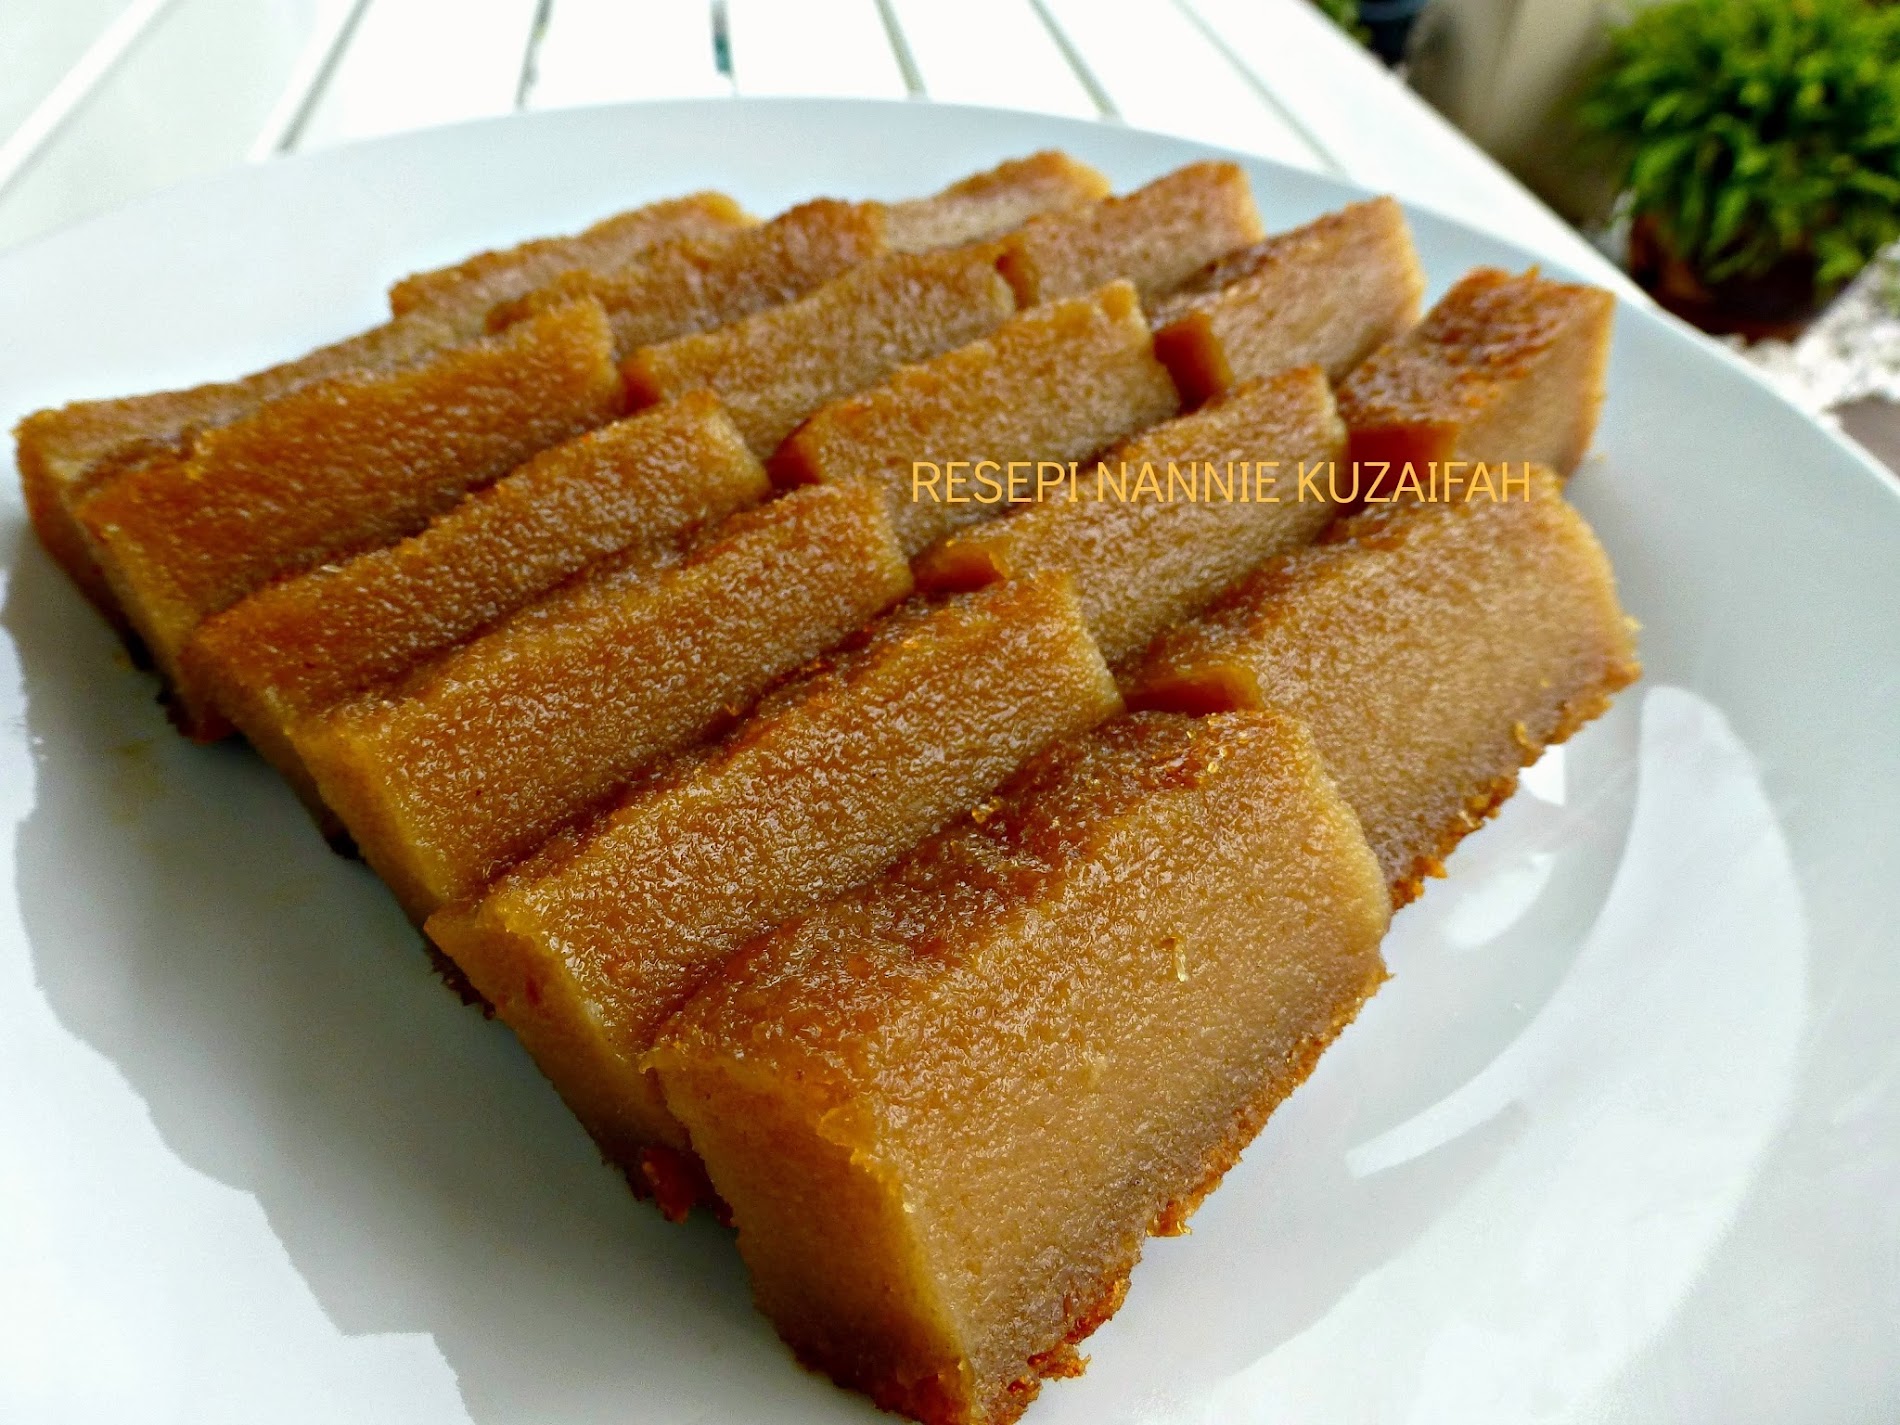 Ubi resepi kayu merah bingka gula DedapurMama:Bingka ubi